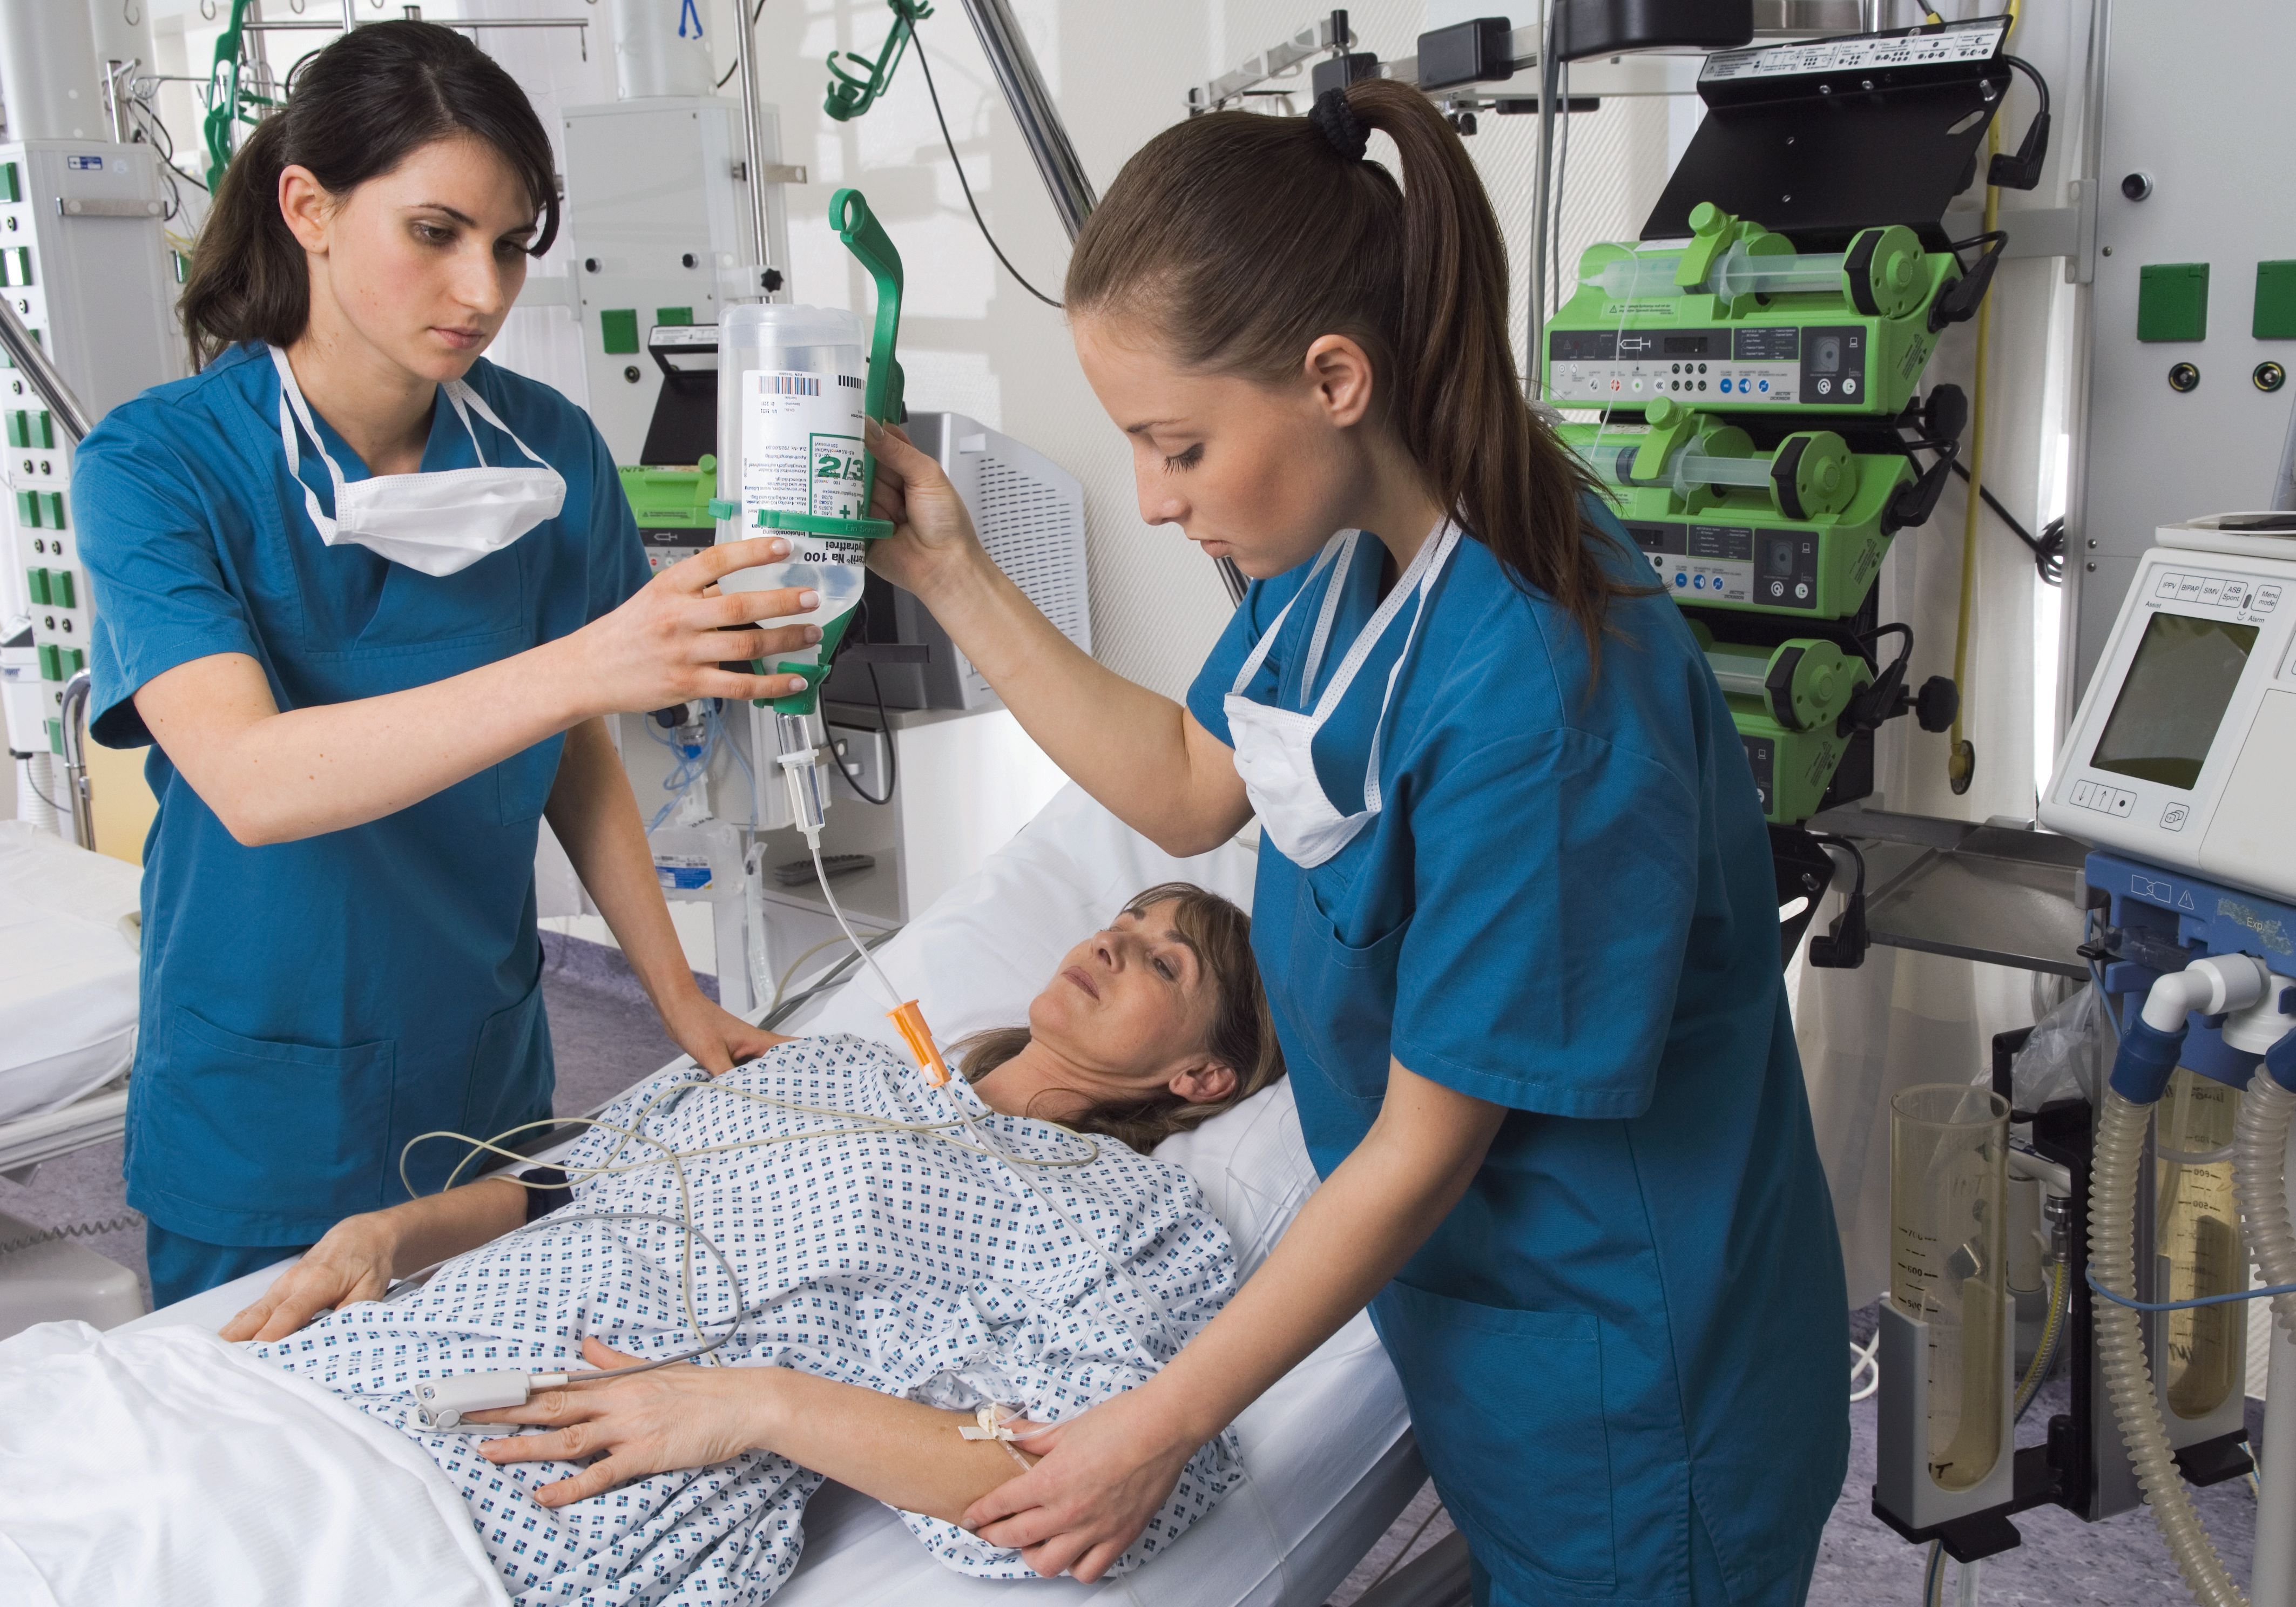 Zwei Krankenpflegerinnen legen eine Infusion bei einer Patientin.